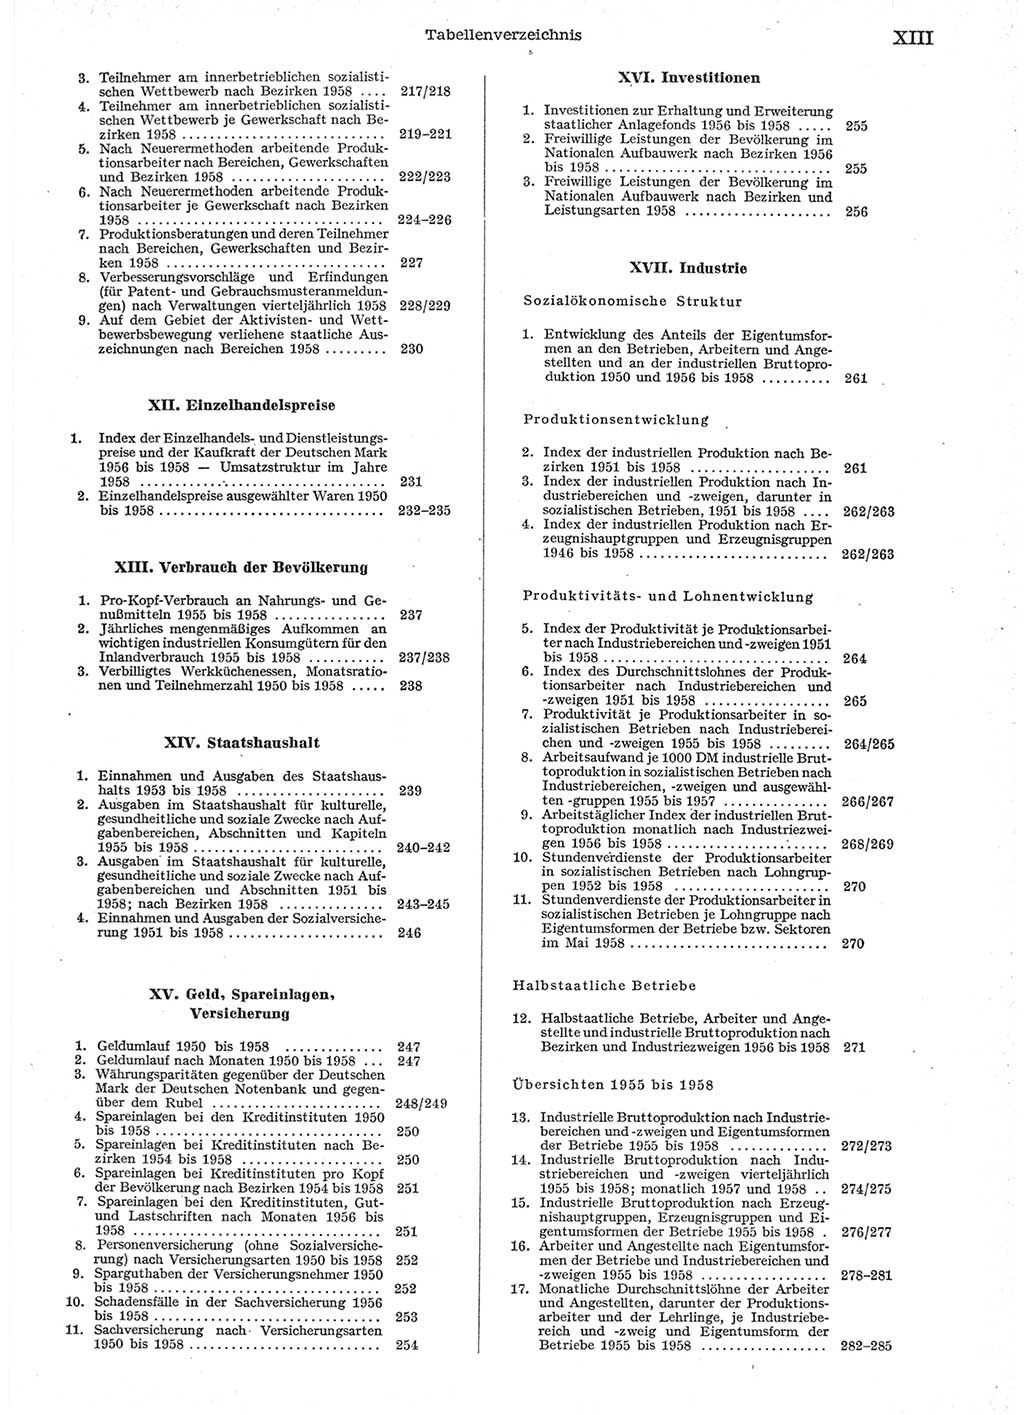 Statistisches Jahrbuch der Deutschen Demokratischen Republik (DDR) 1958, Seite 13 (Stat. Jb. DDR 1958, S. 13)